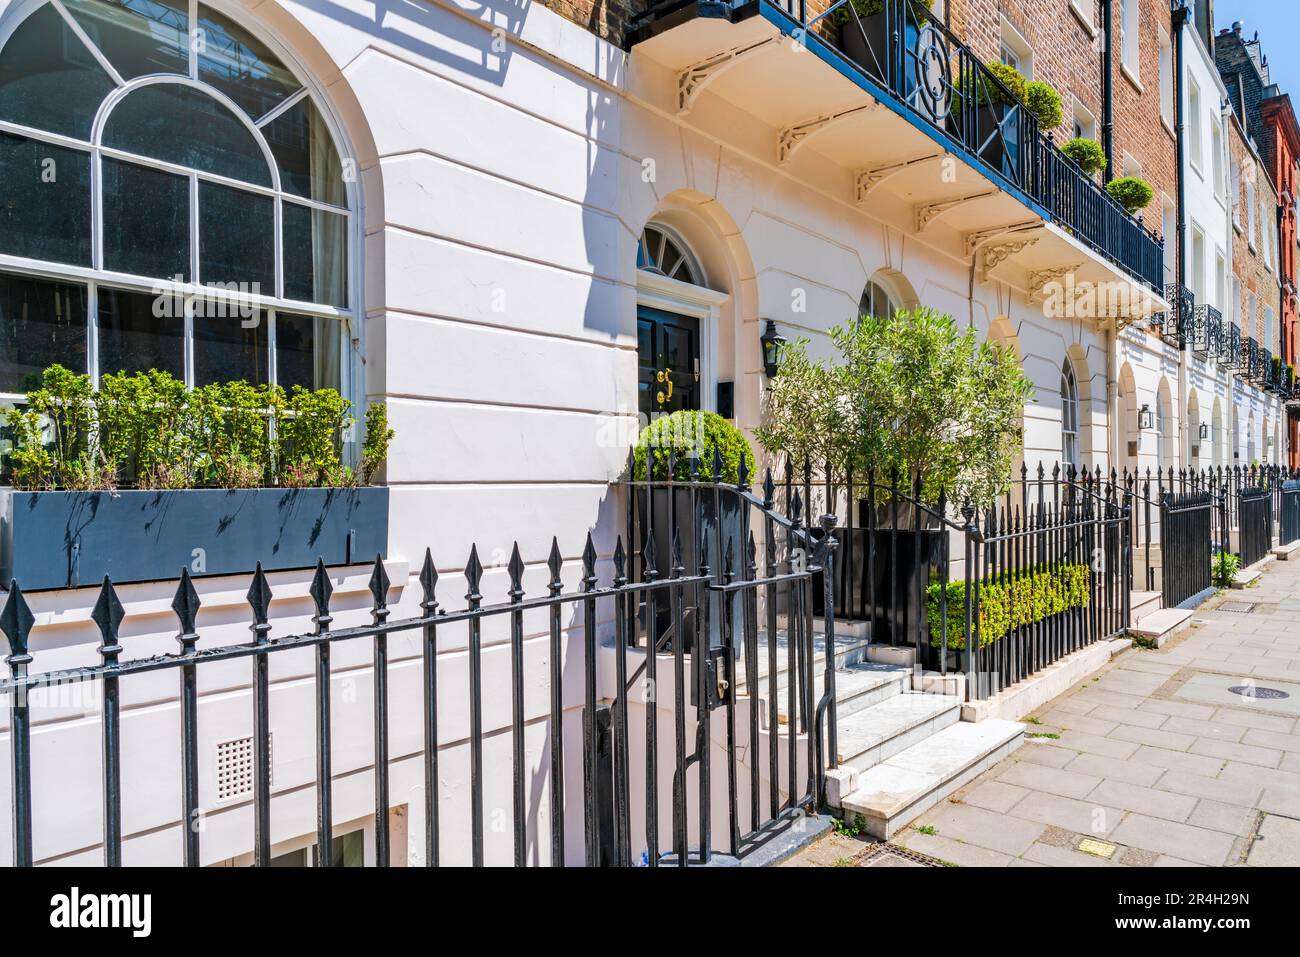 Elegant terraced houses in residential street of Belgravia, London, UK Stock Photo